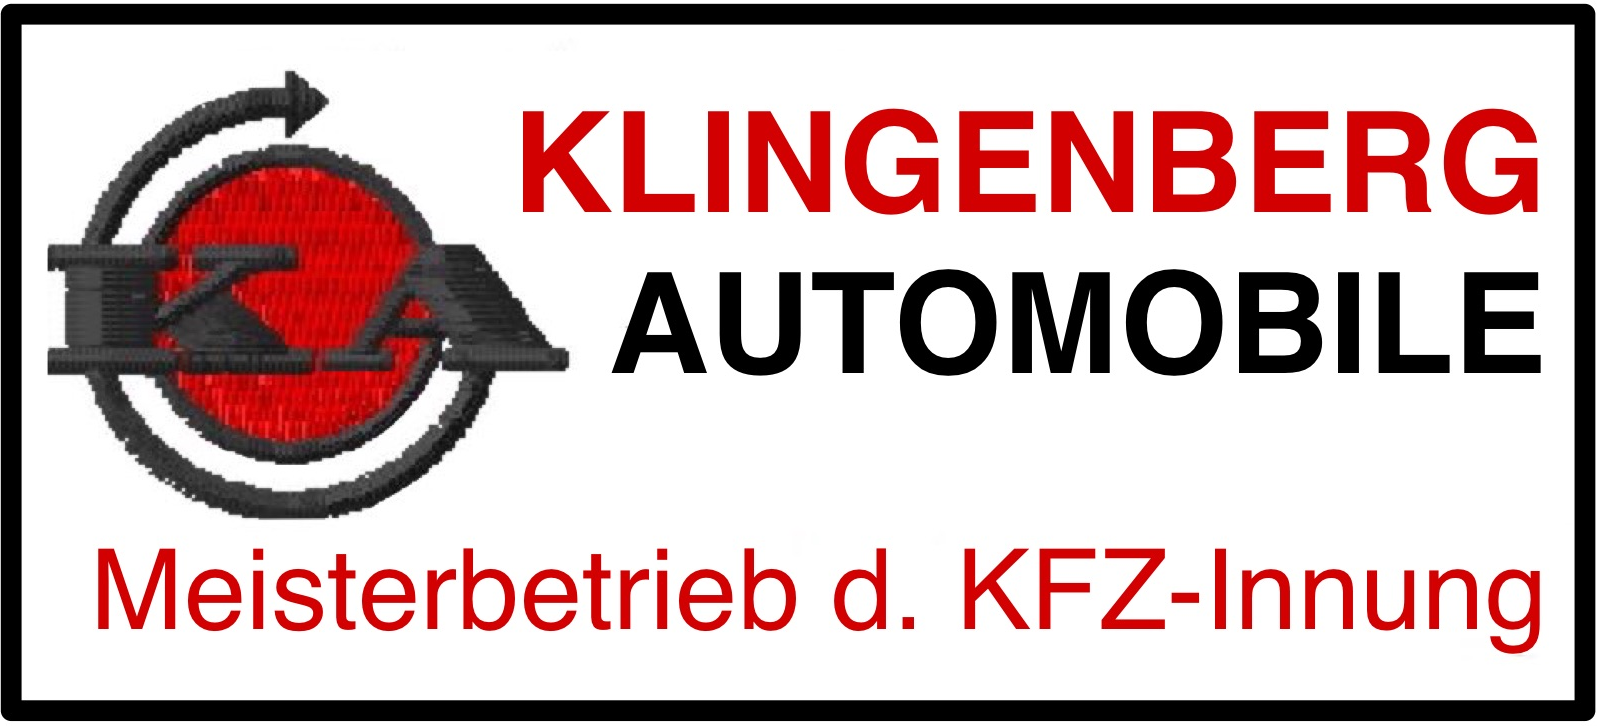 Klingenberg Automobile: Ihre Autowerkstatt in Klein-Schwaß